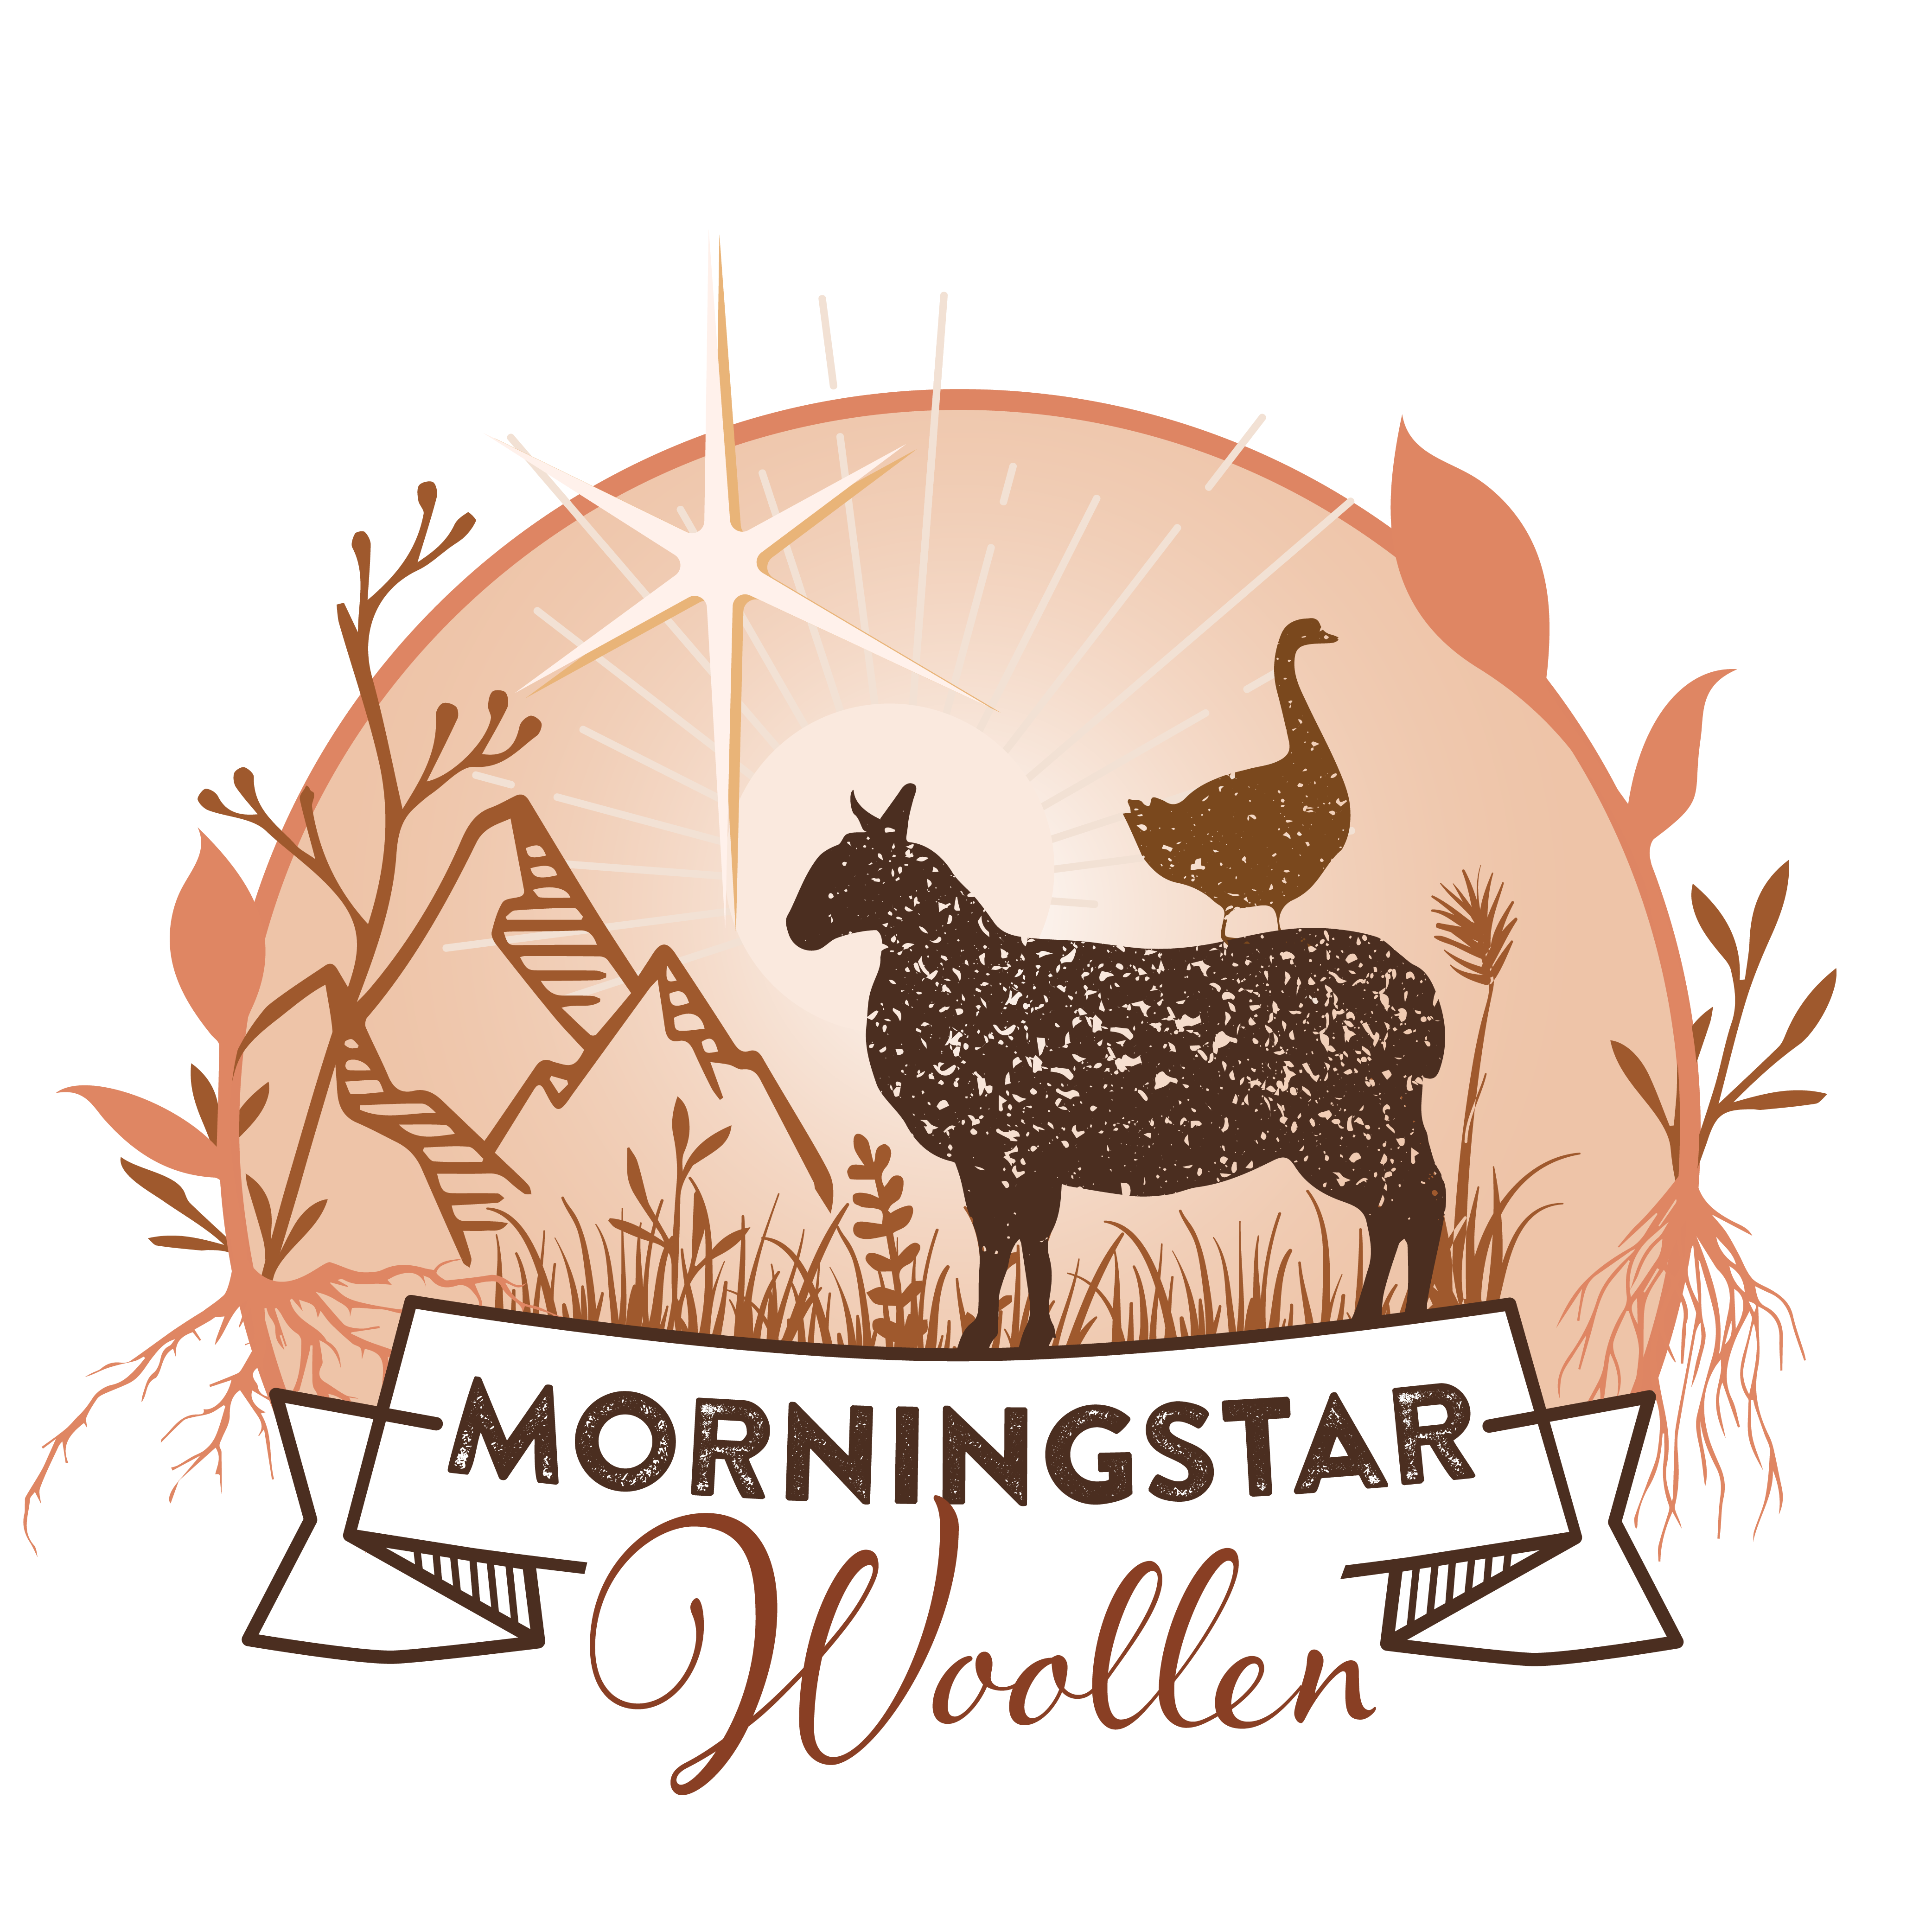 MorningStar Woollen logo